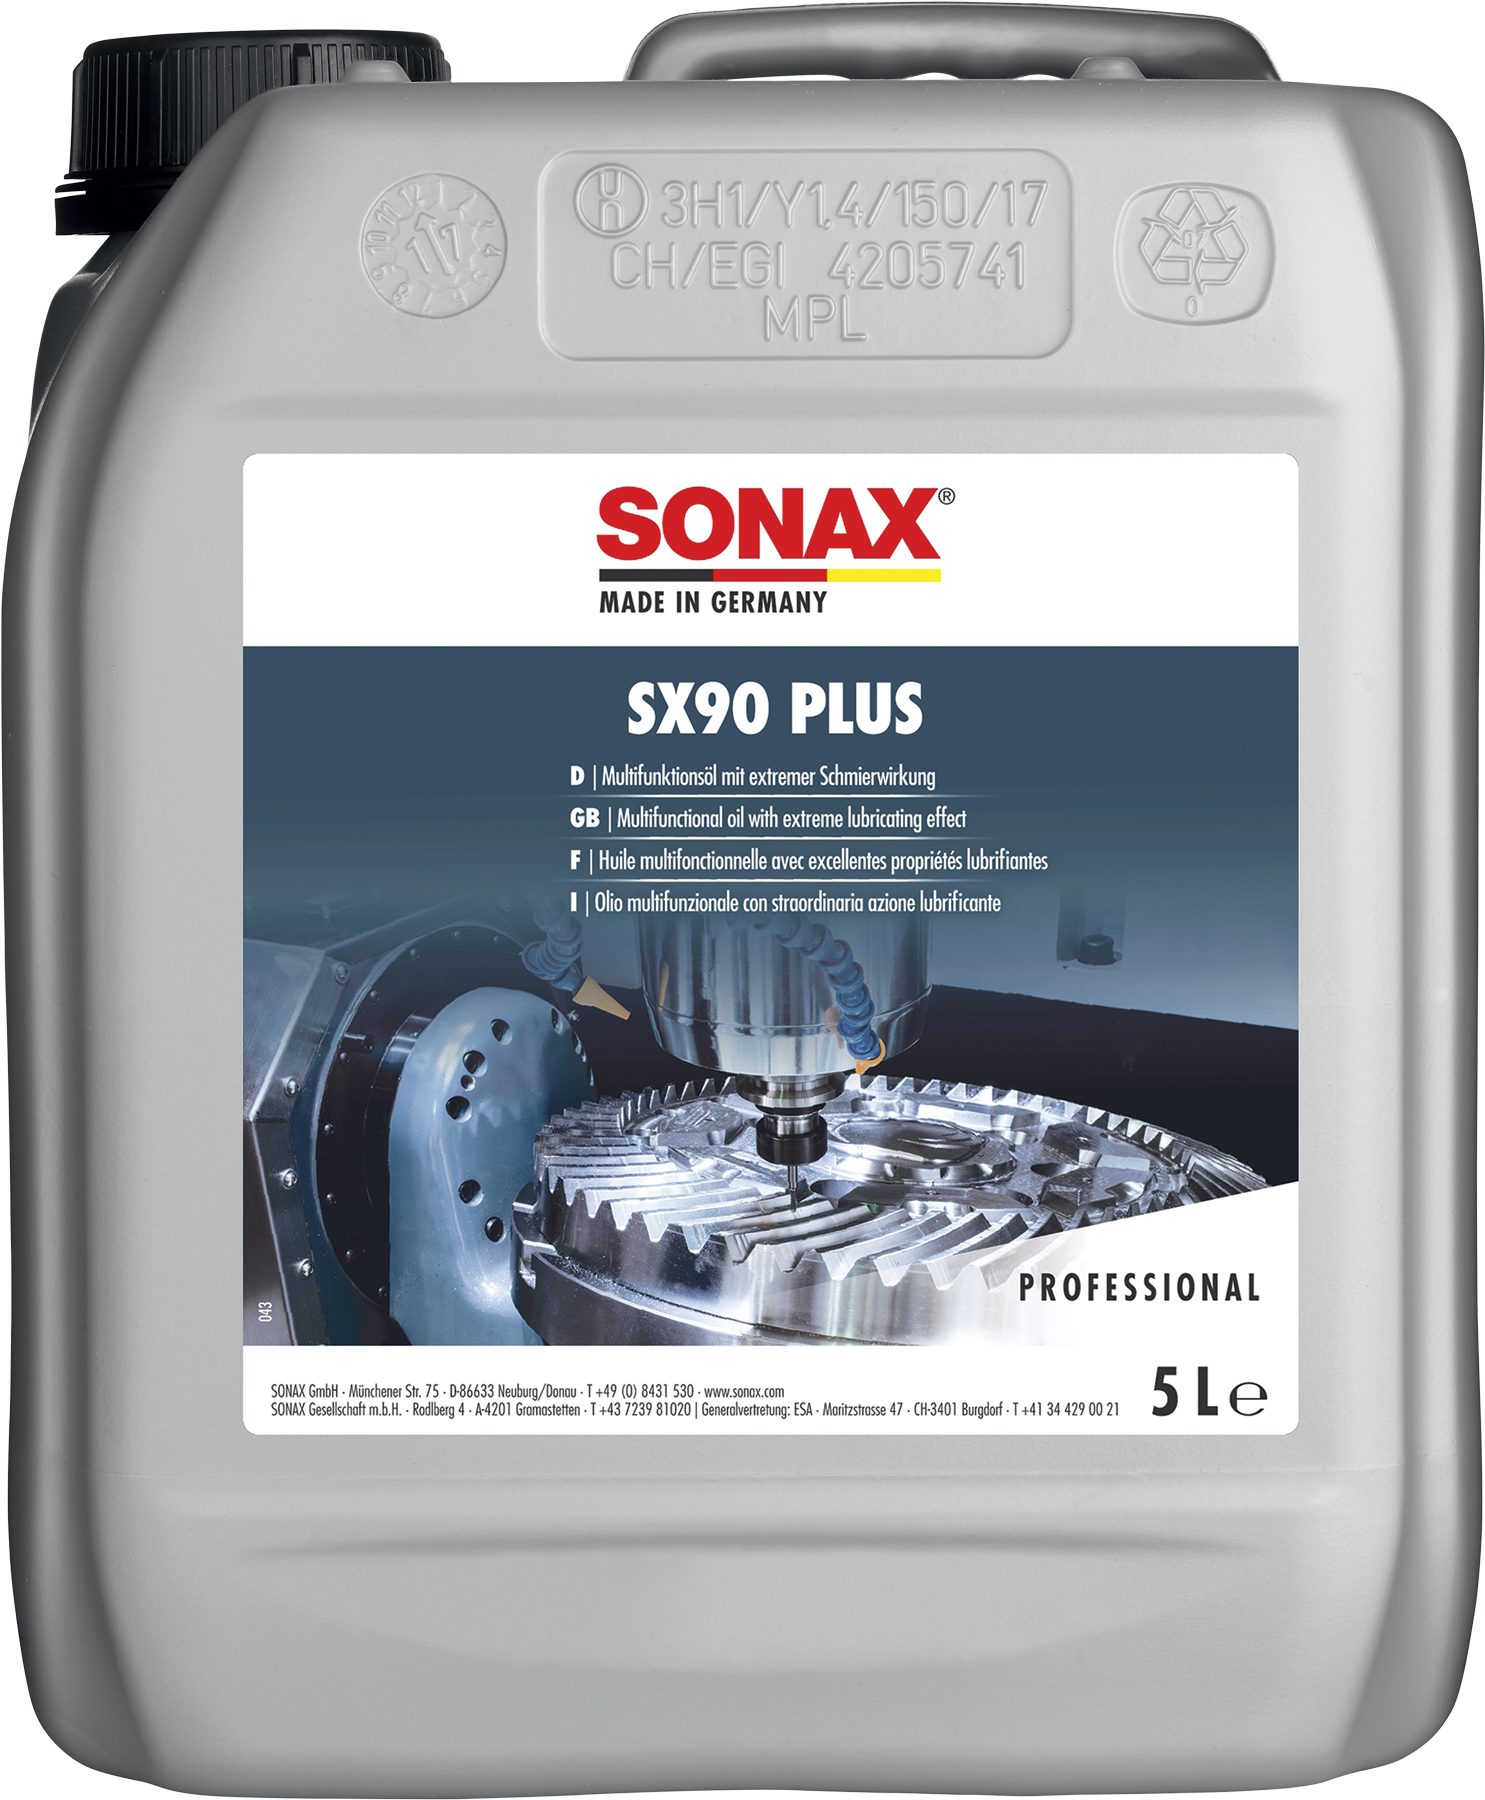 Sonax SONAX Professional SX90 PLUS 5 L Auto-Reinigungsmittel